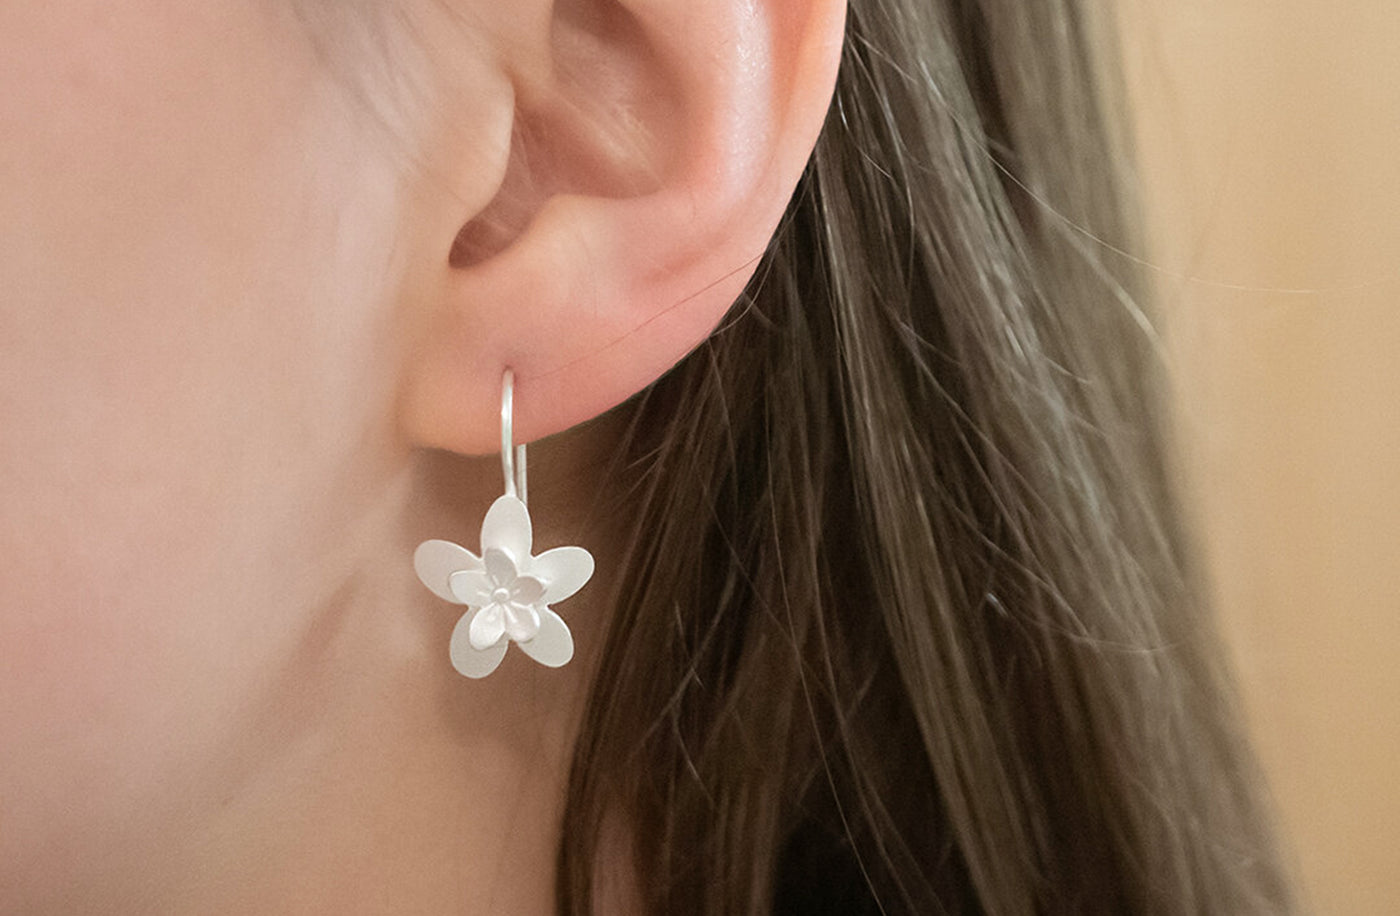 Sakura (Cherry Blossom) Earrings